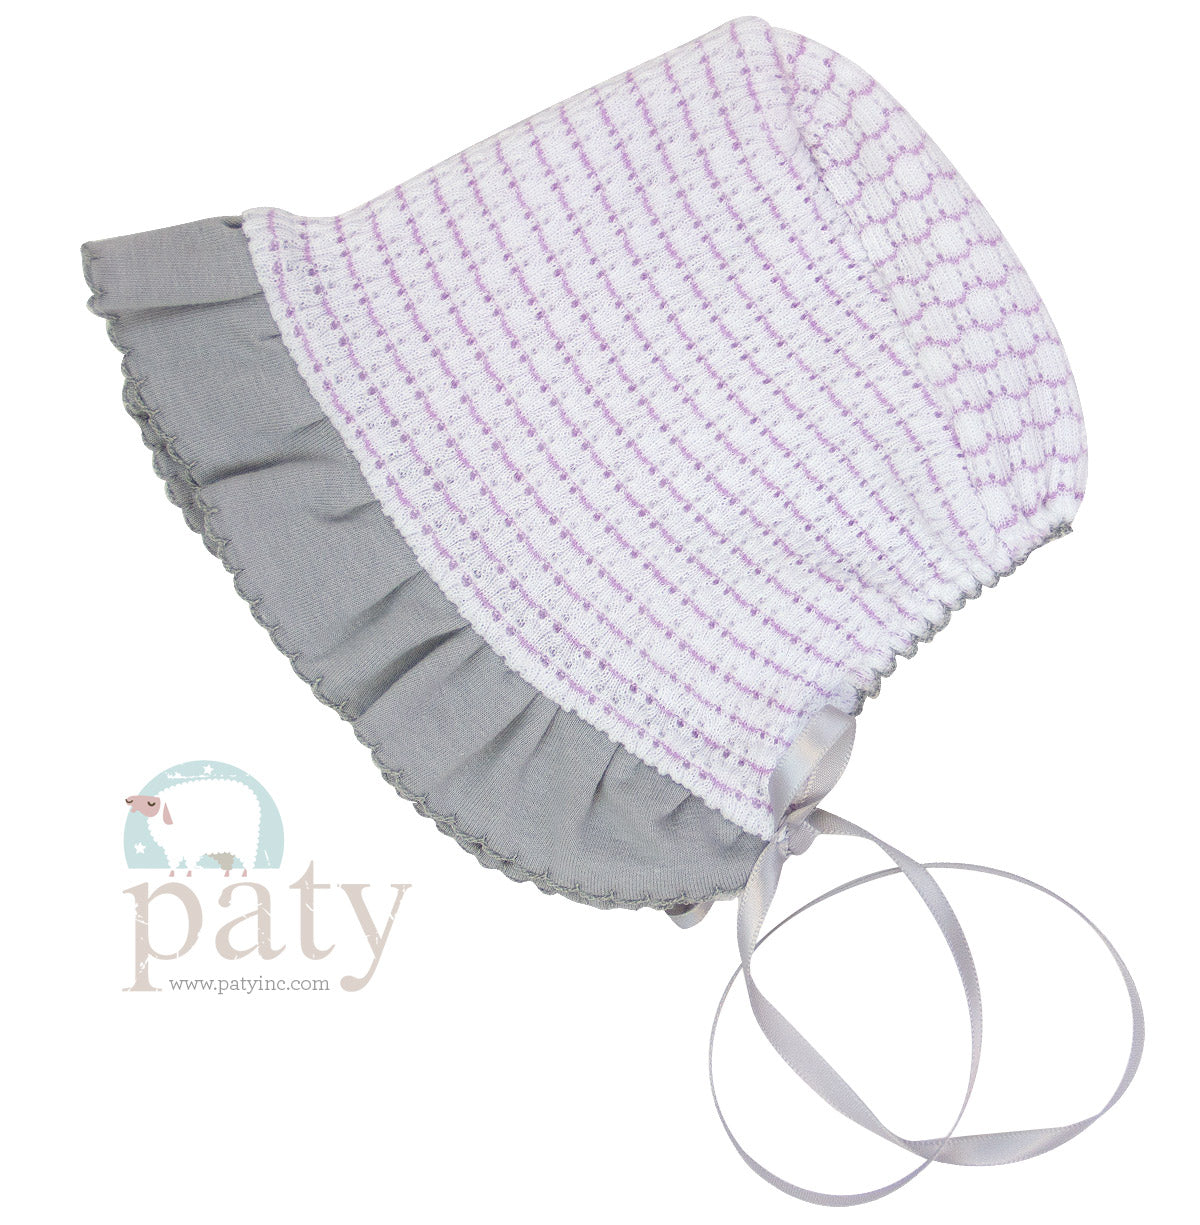 Pinstripe Paty Knit Bonnet, Pima Ruffle